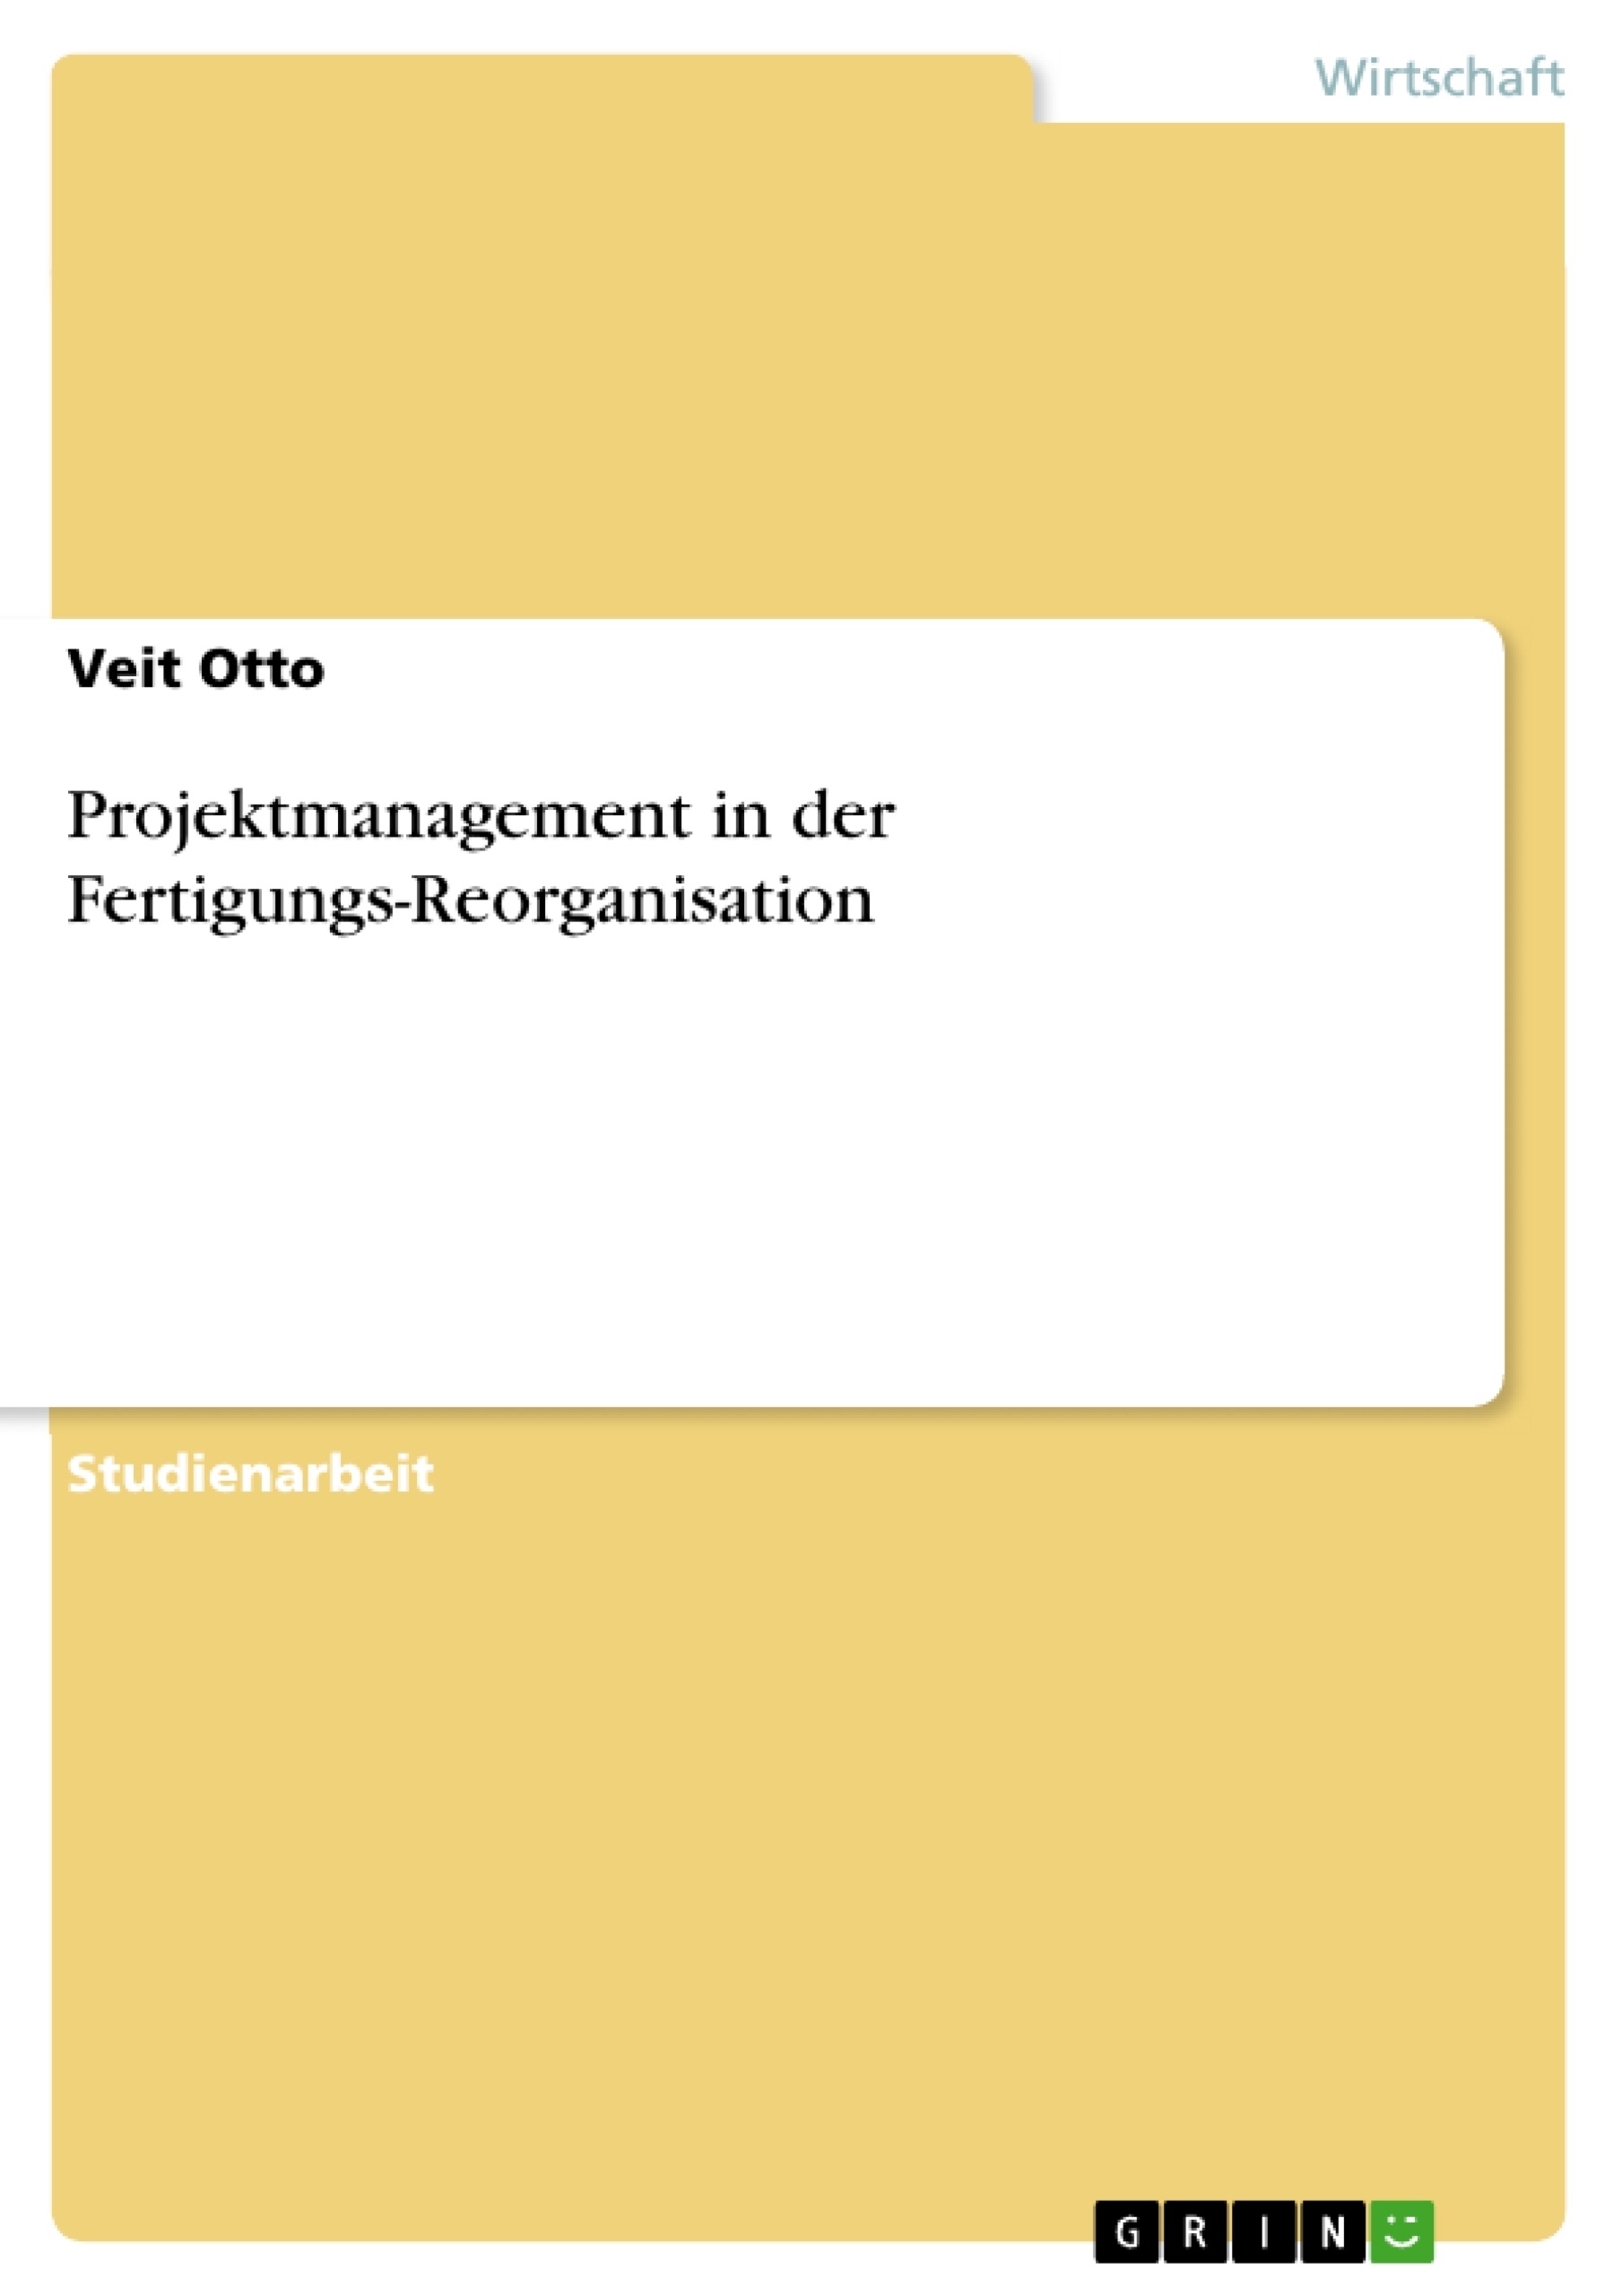 Title: Projektmanagement in der Fertigungs-Reorganisation